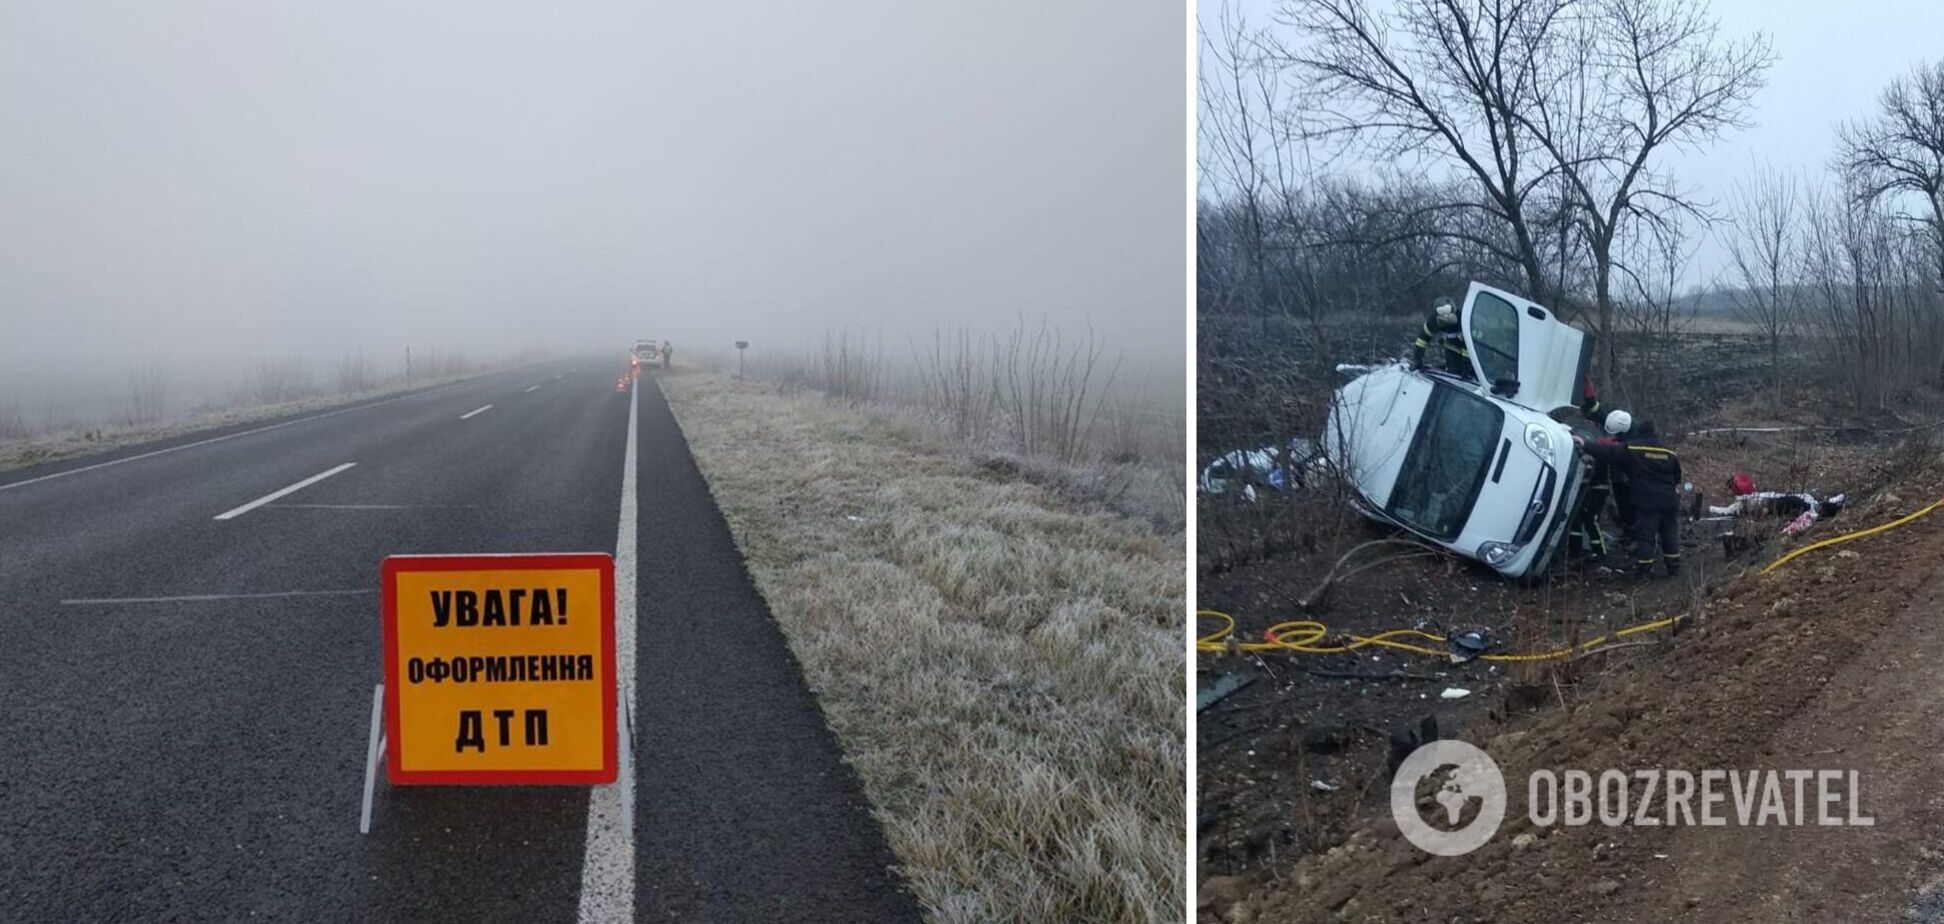 На Луганщине произошло ДТП с участием маршрутки: есть погибший, пострадали семь человек. Фото